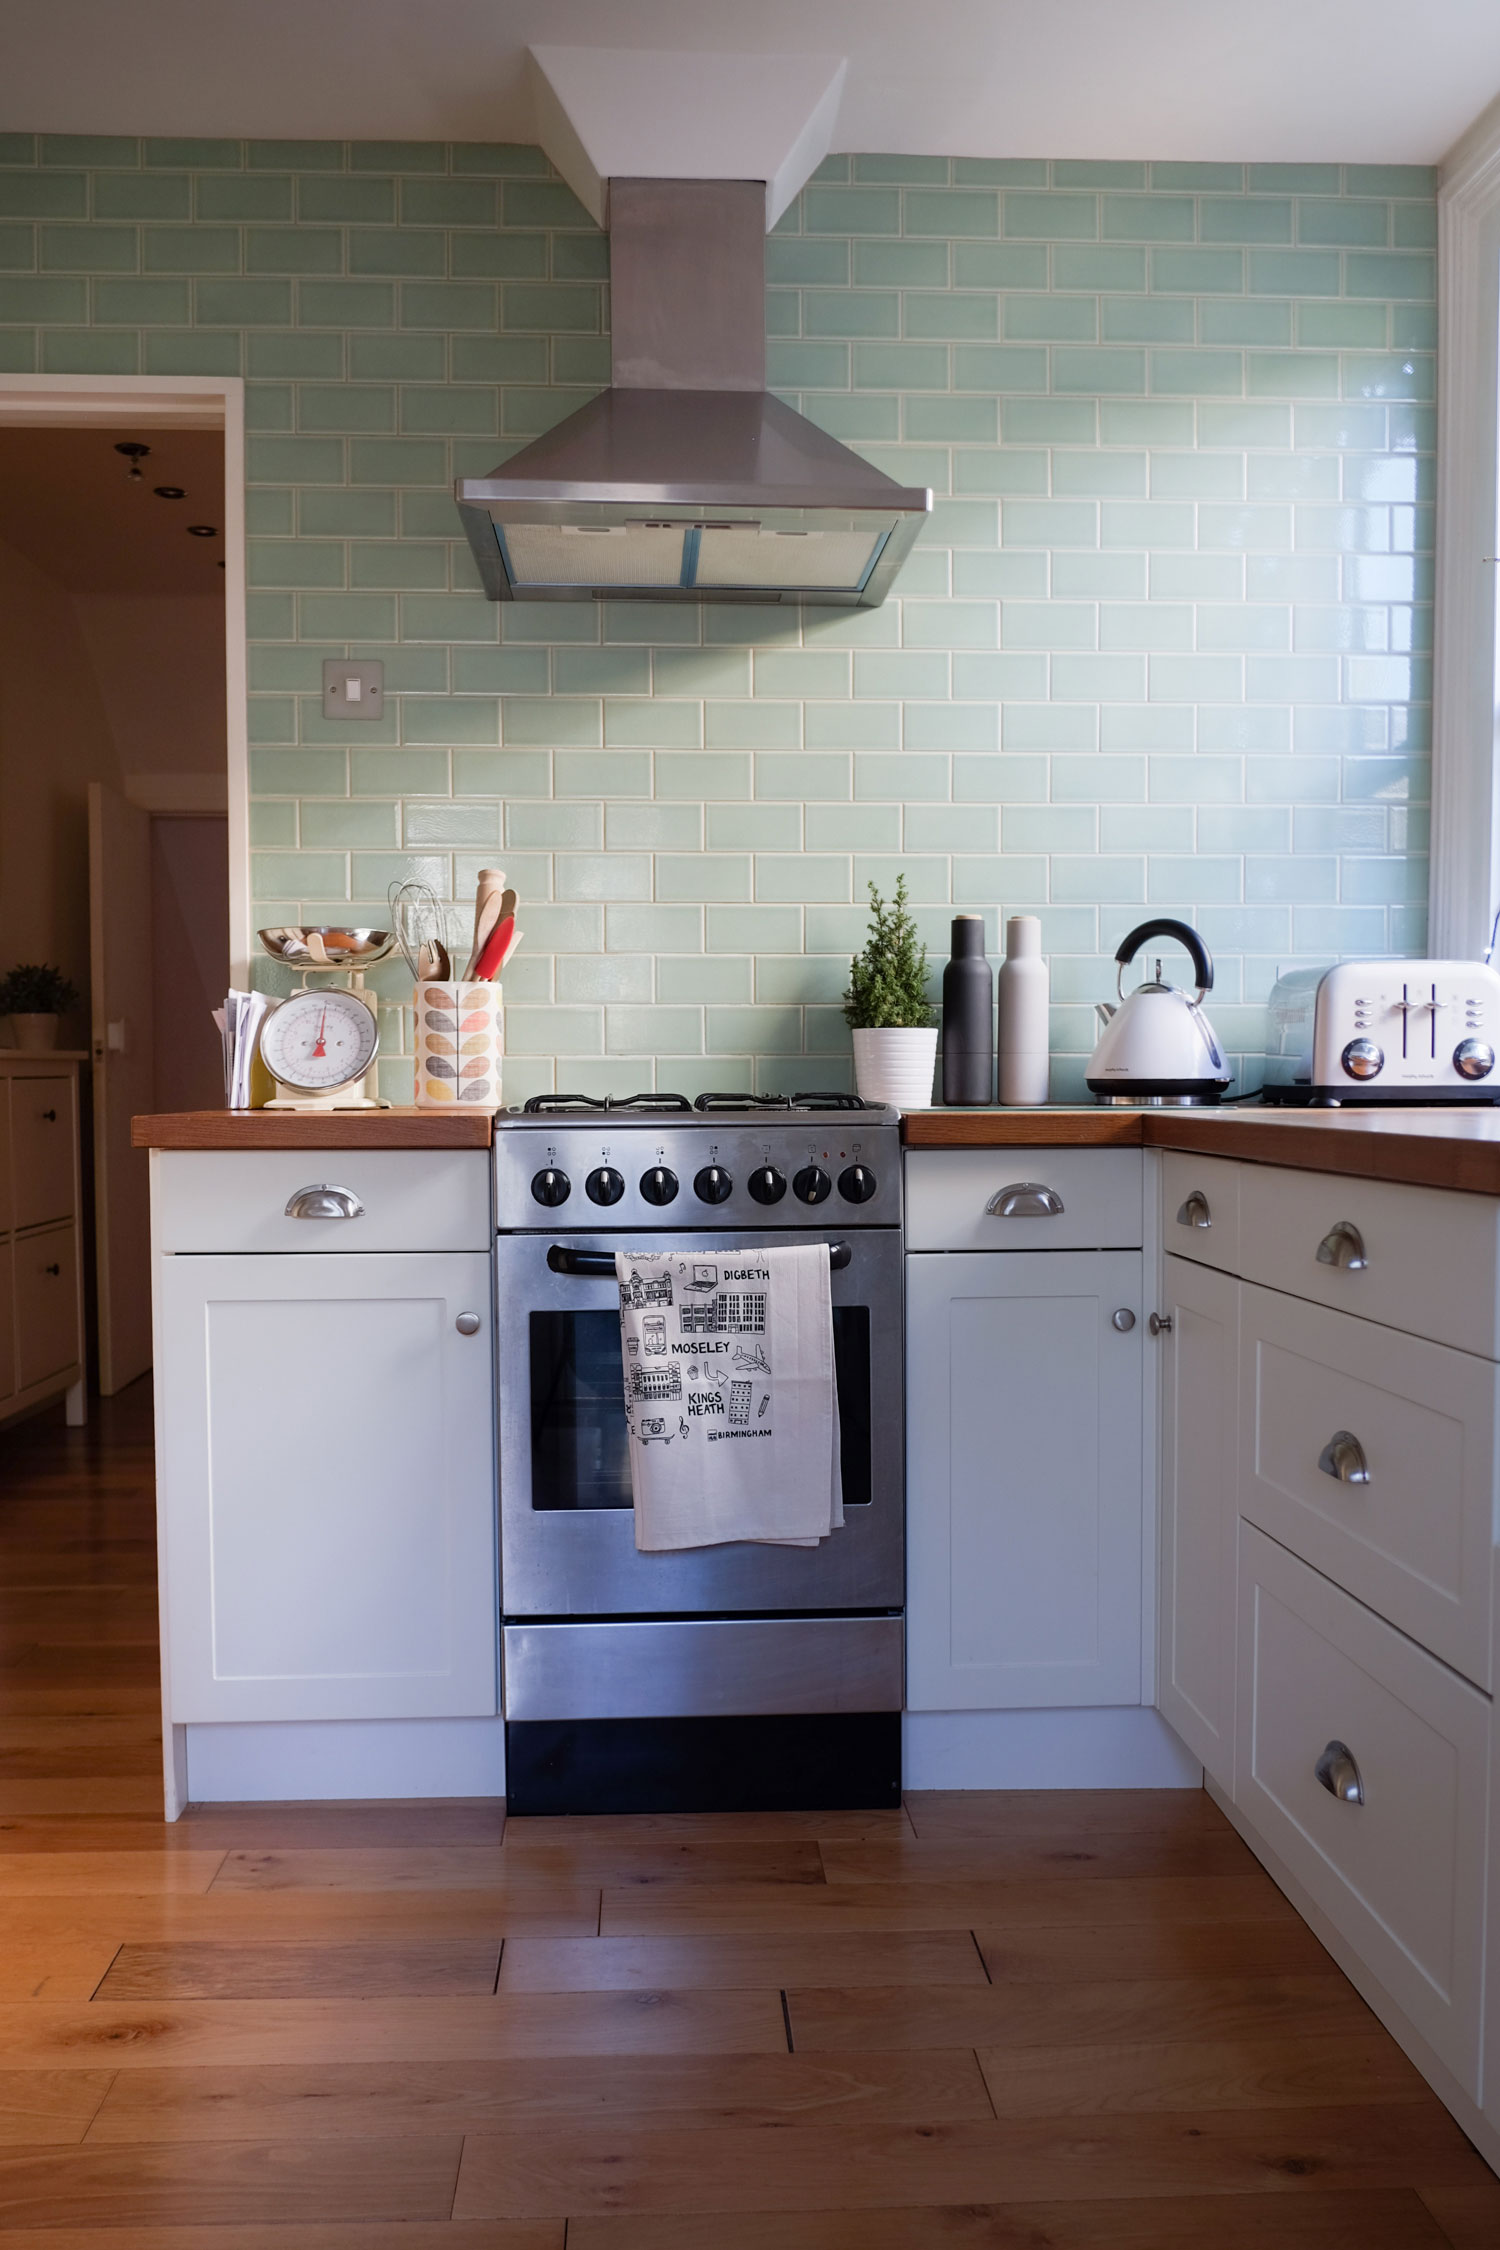 interiordesign_clairehartley-kitchen2